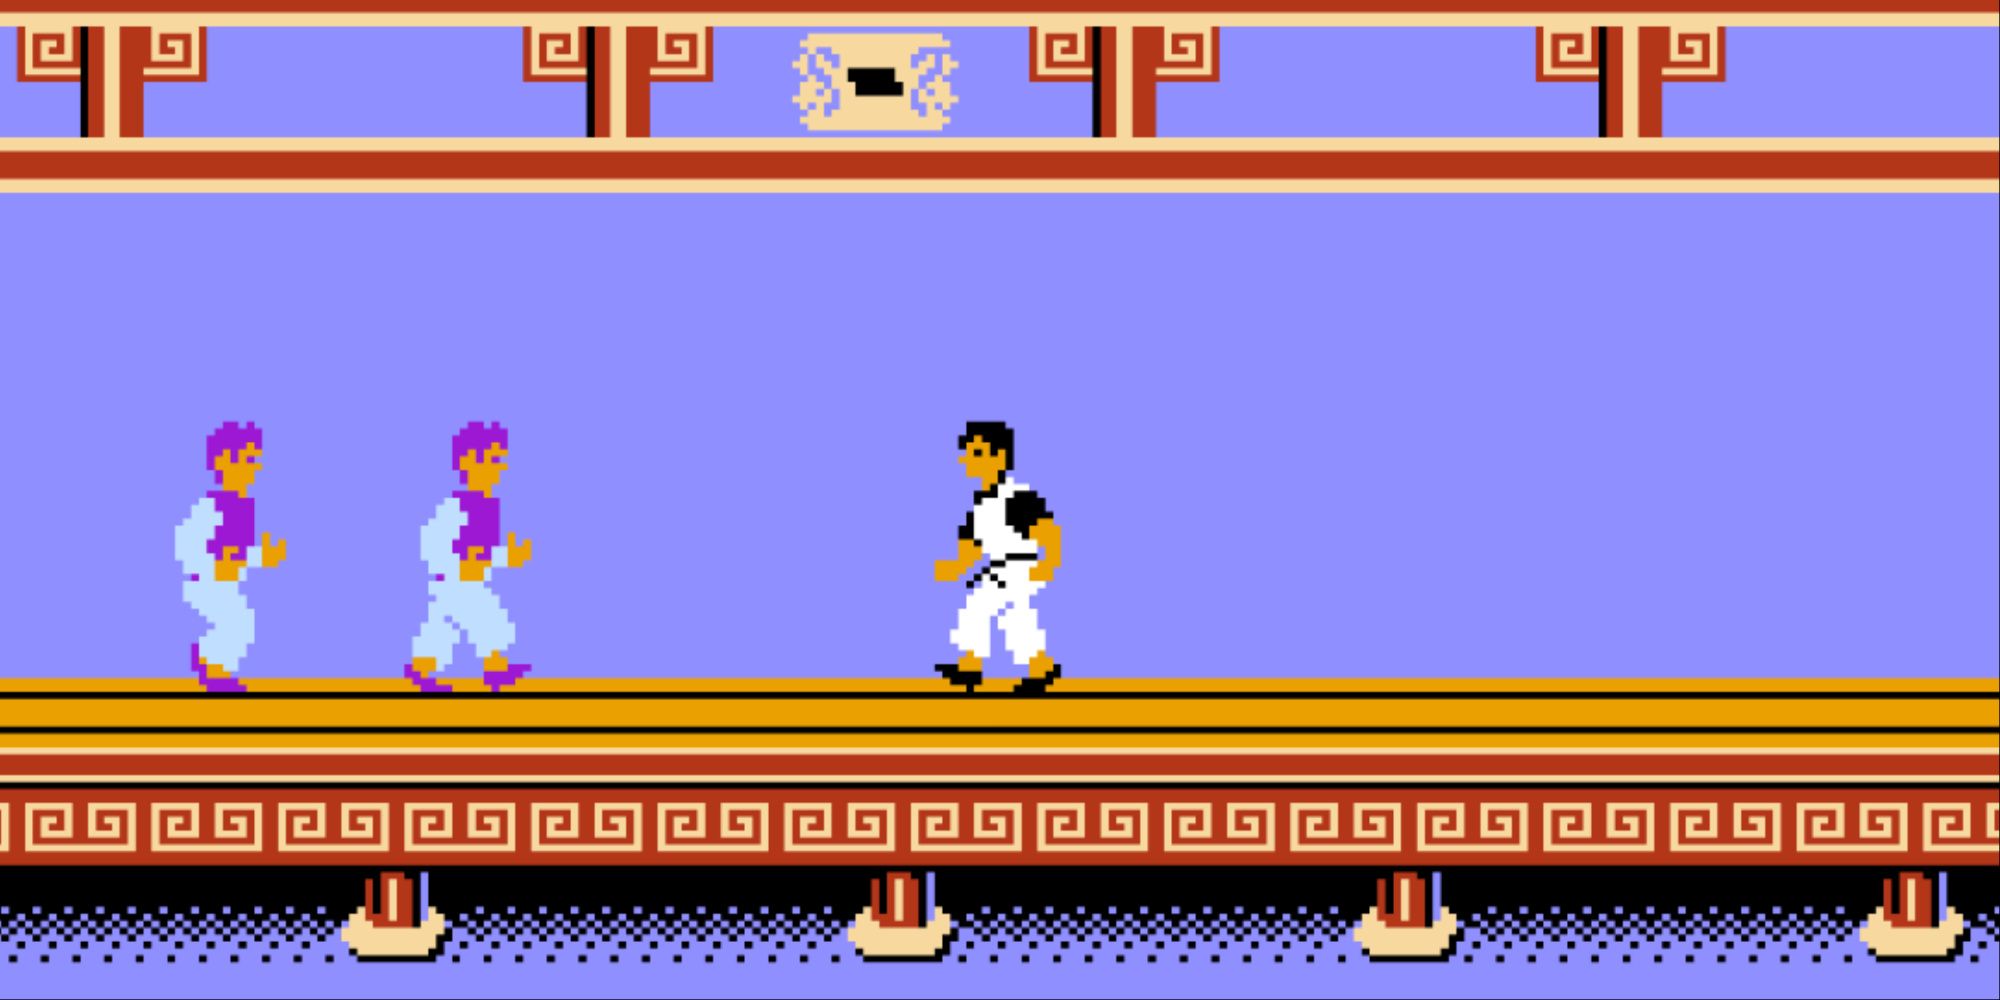 Fighting enemies in Kung Fu